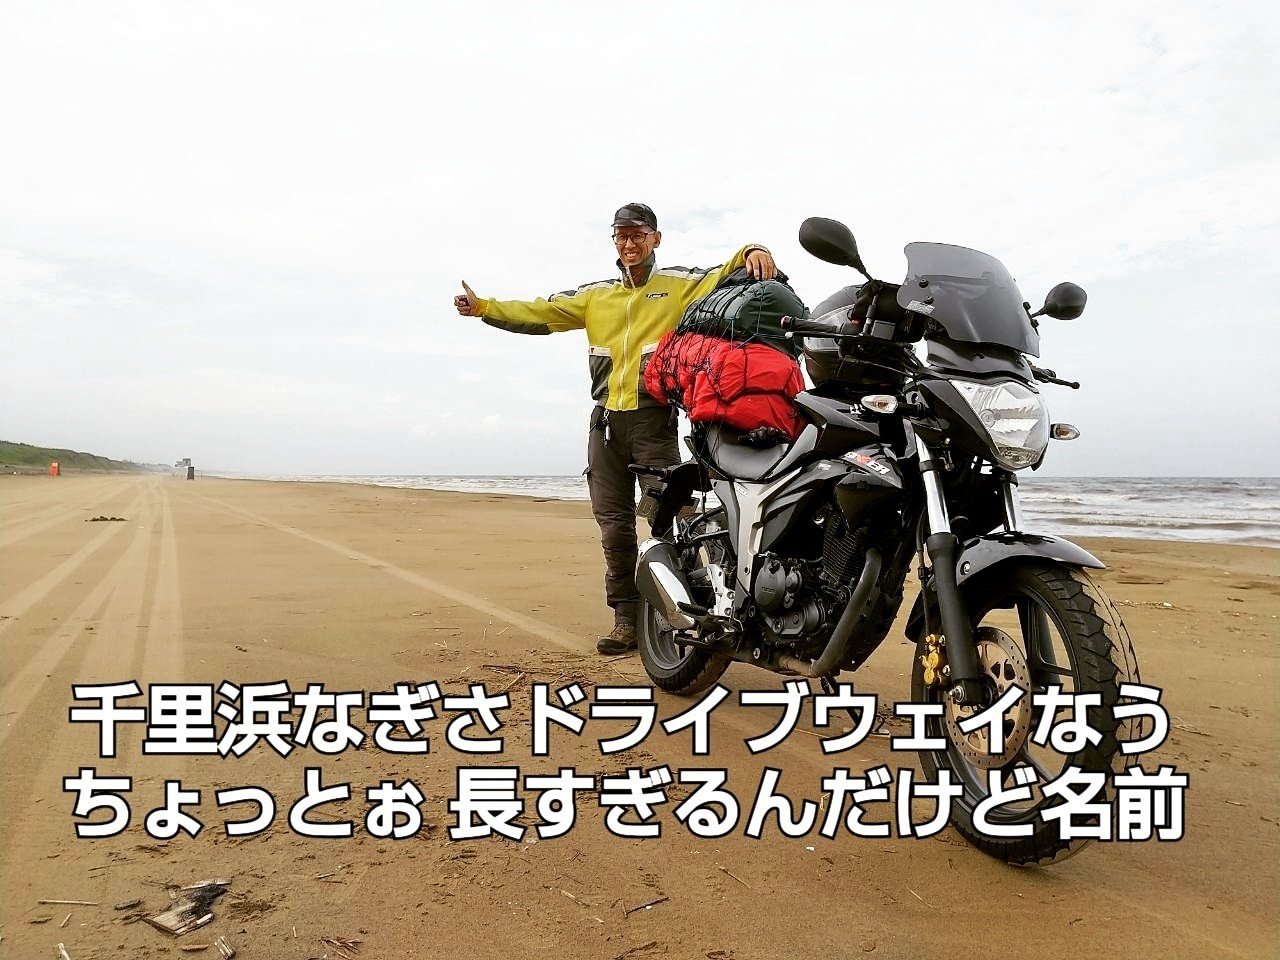 渚ドライブウェイなう ご存知日本で唯一 バイクが走っても沈まない細かい砂の浜辺です 千里浜なぎさドライブウェイ とも言いますがが 千里浜の意味は塵の浜辺 打ち寄せるゴミの多さにそう呼ばれていました その 三河屋幾朗 Mikawaya1960 Note